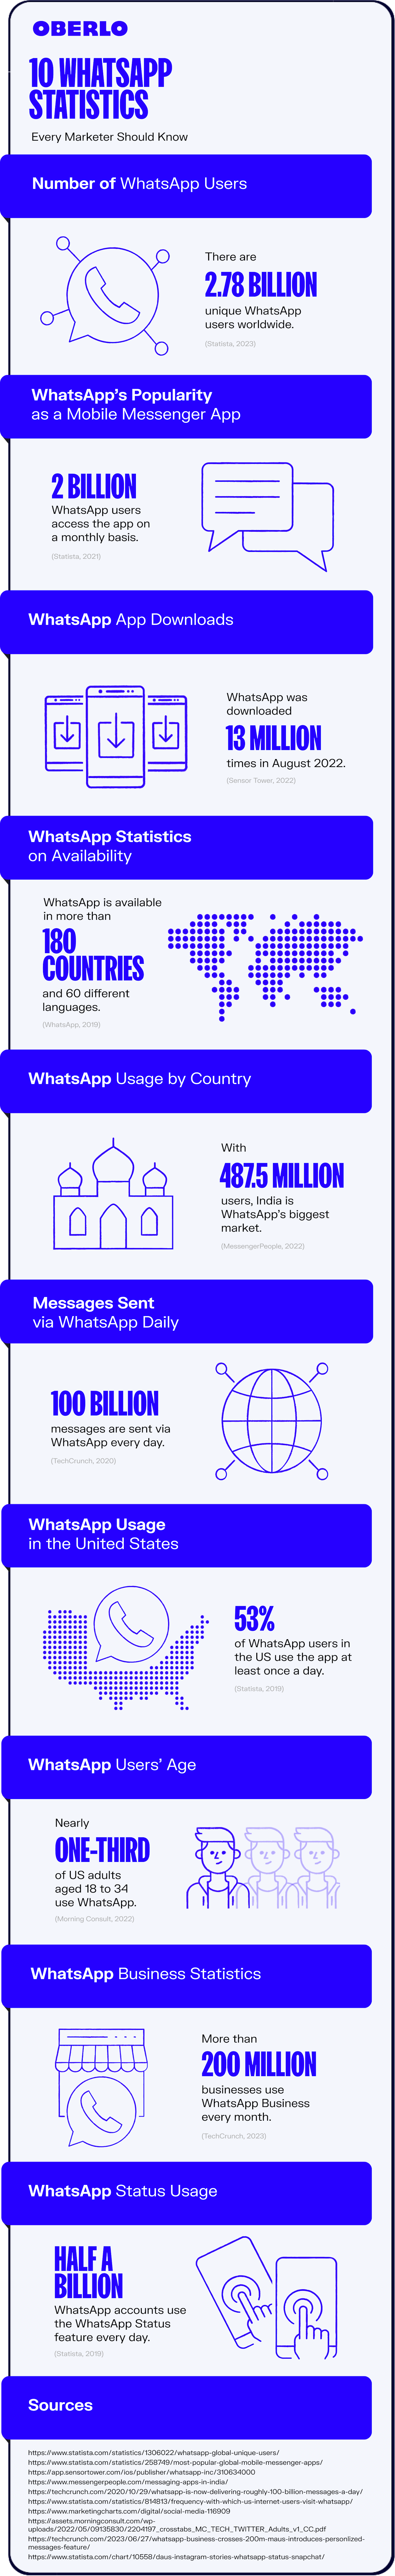 whatsapp statistics full infographic